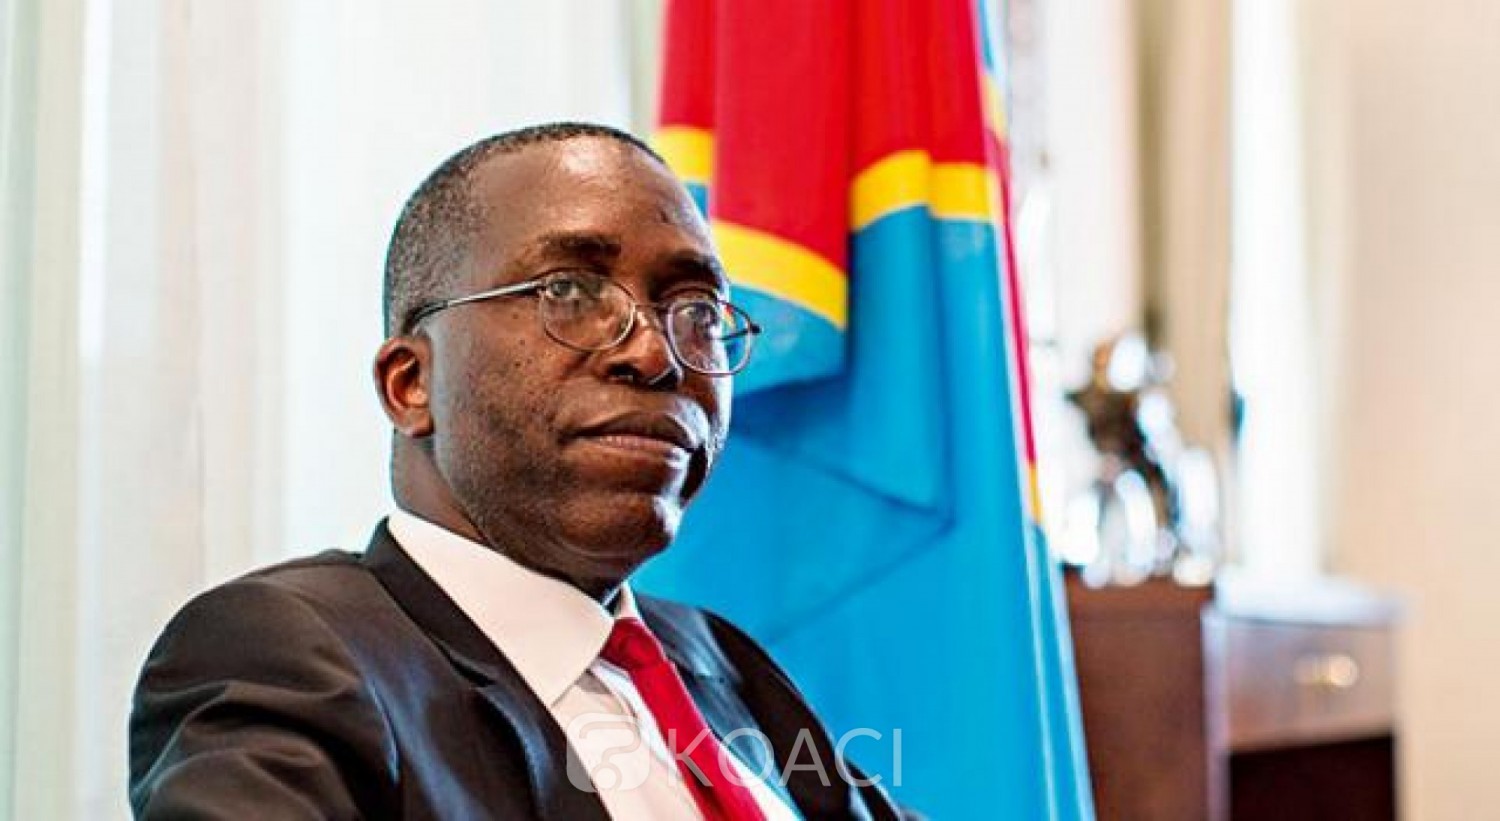 RDC : Accusé de détournement de fonds, l'ex-Premier ministre Augustin Matata écourte son séjour à Conakry et réagit